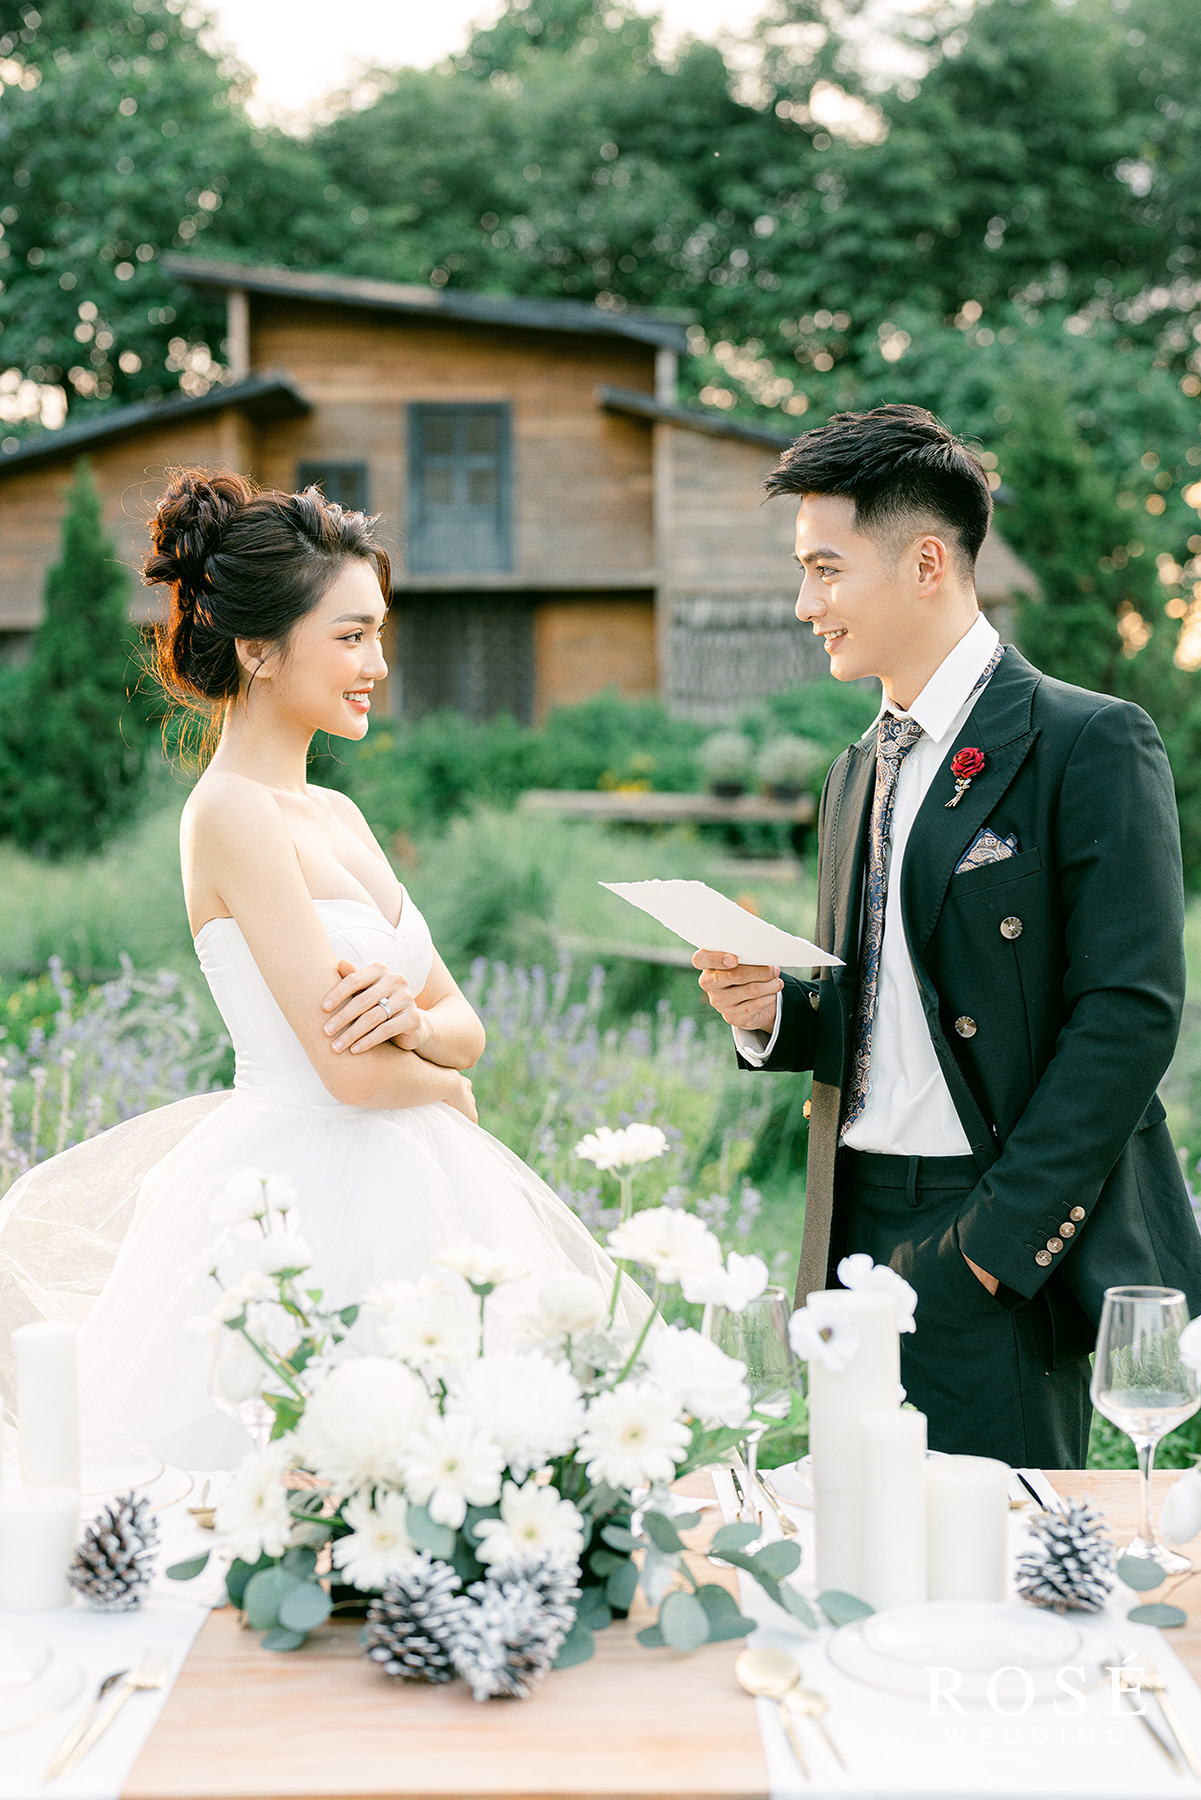 Hé lộ ảnh cưới đẹp lung linh của “Gương mặt đẹp nhất Hoa hậu Hoàn vũ Việt Nam” - Ảnh 6.